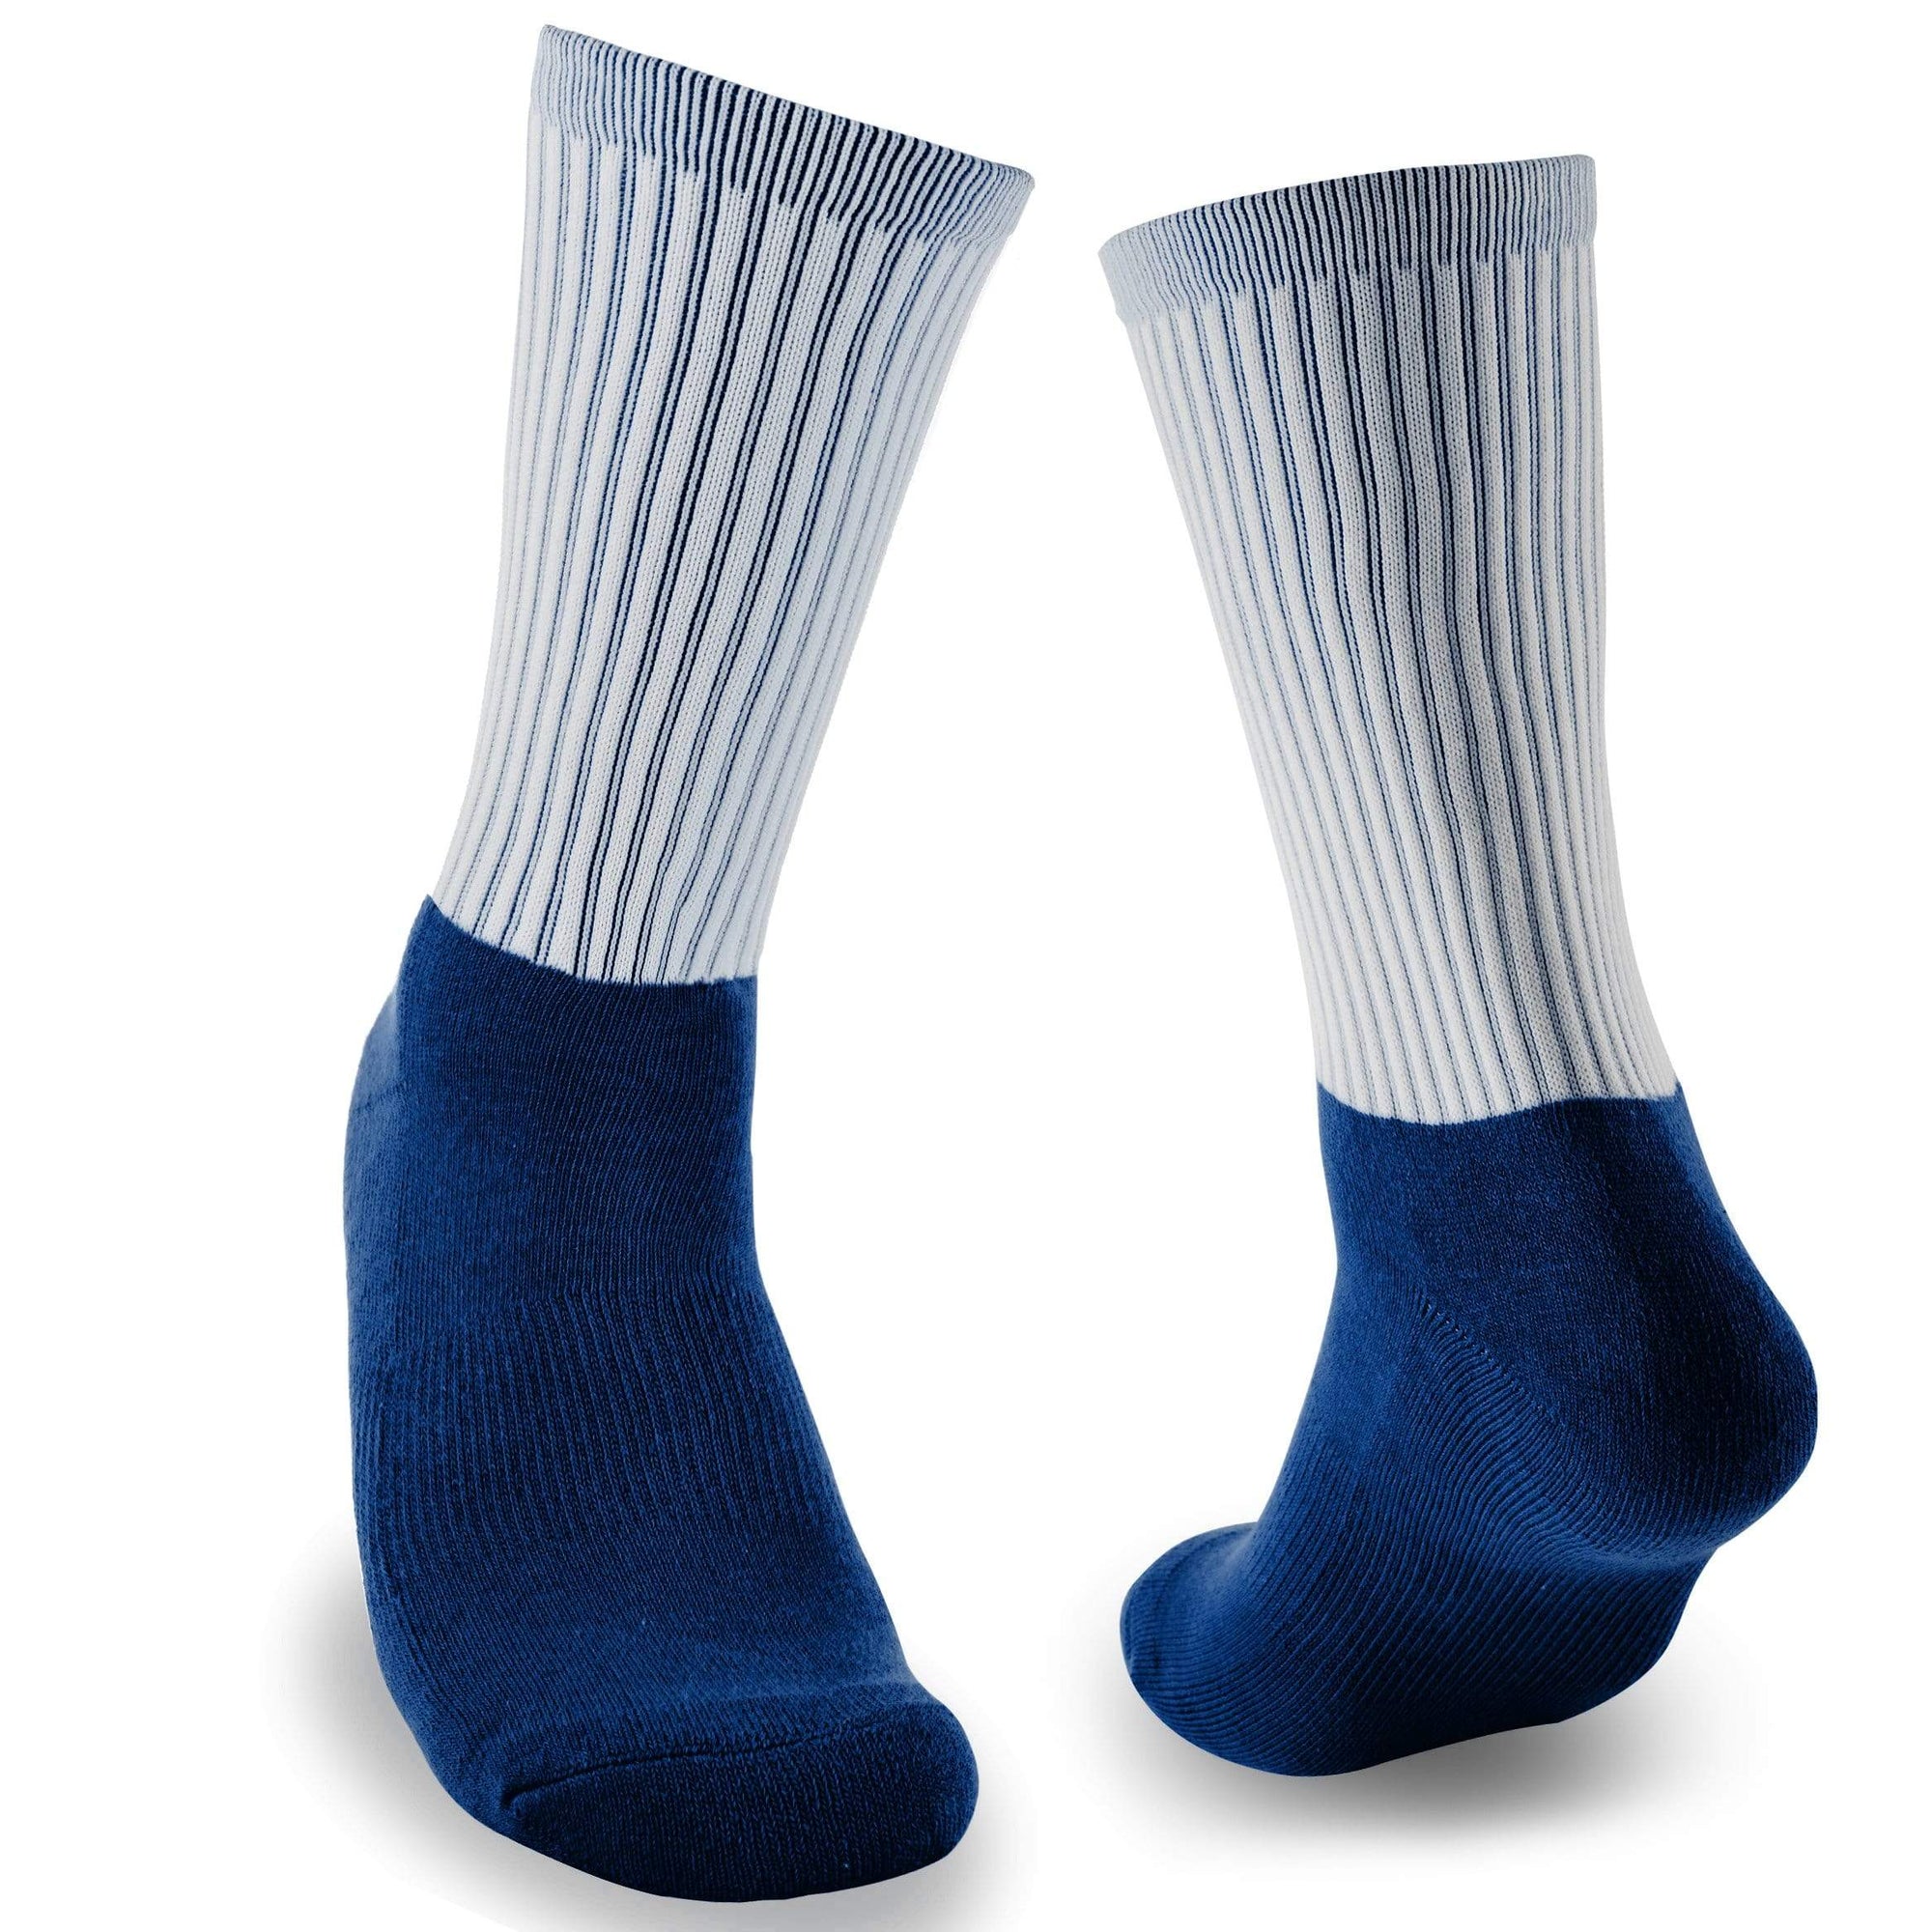 Sublimation Socks - Deep Blue design